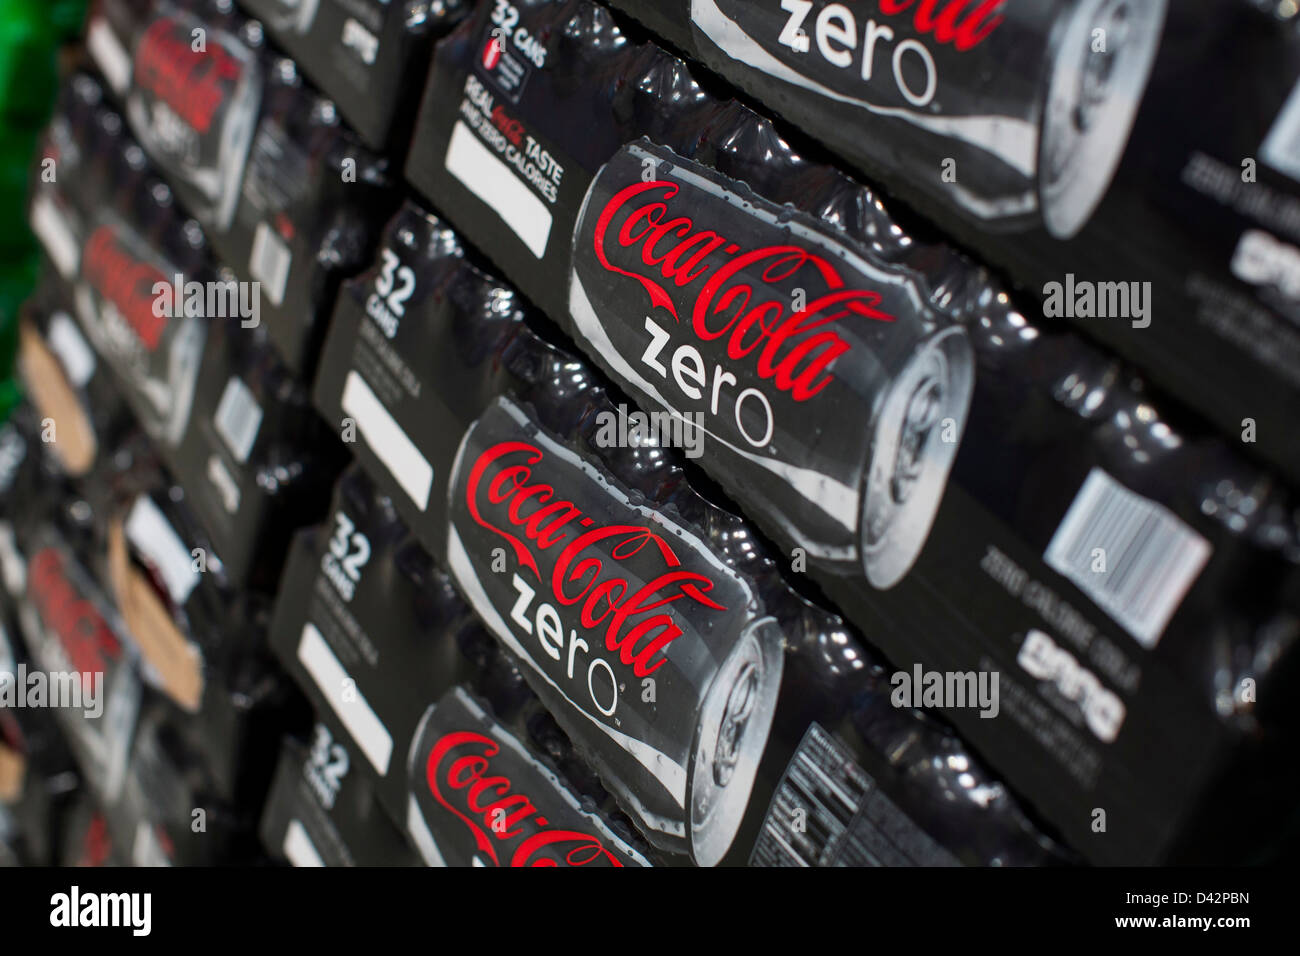 Coca-Cola Zero sur l'affichage à un entrepôt Costco Wholesale Club. Banque D'Images